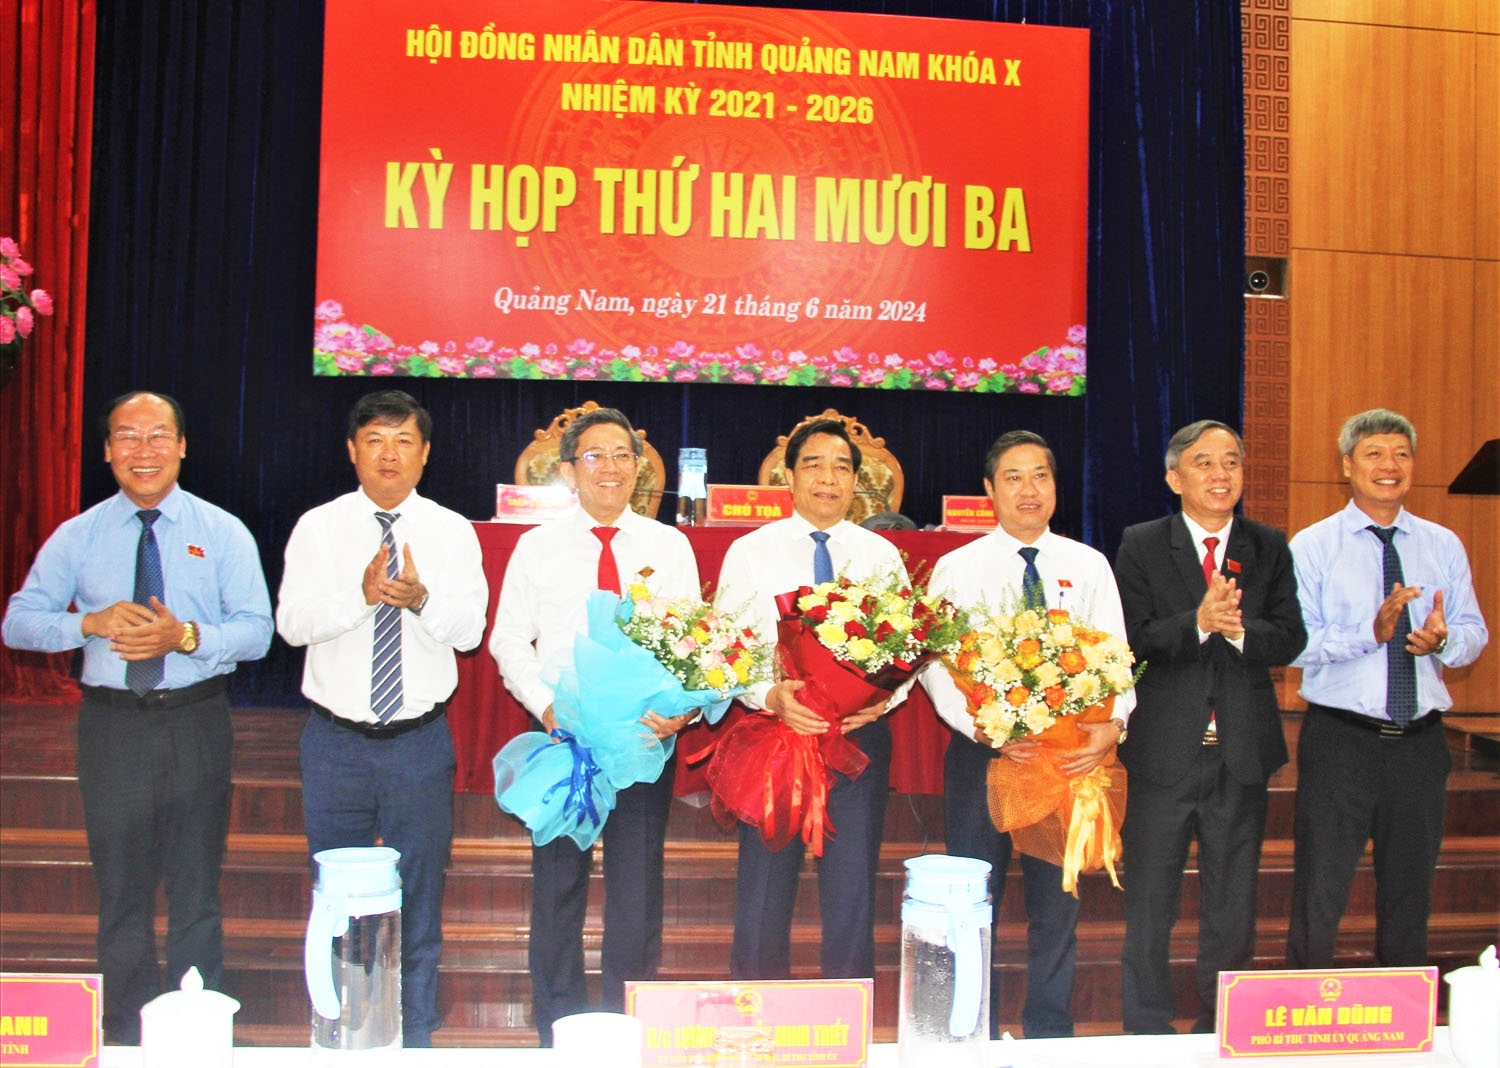 Ông Lê Văn Dũng (đứng giữa) được bầu làm Chủ tịch UBND tỉnh Quảng Nam